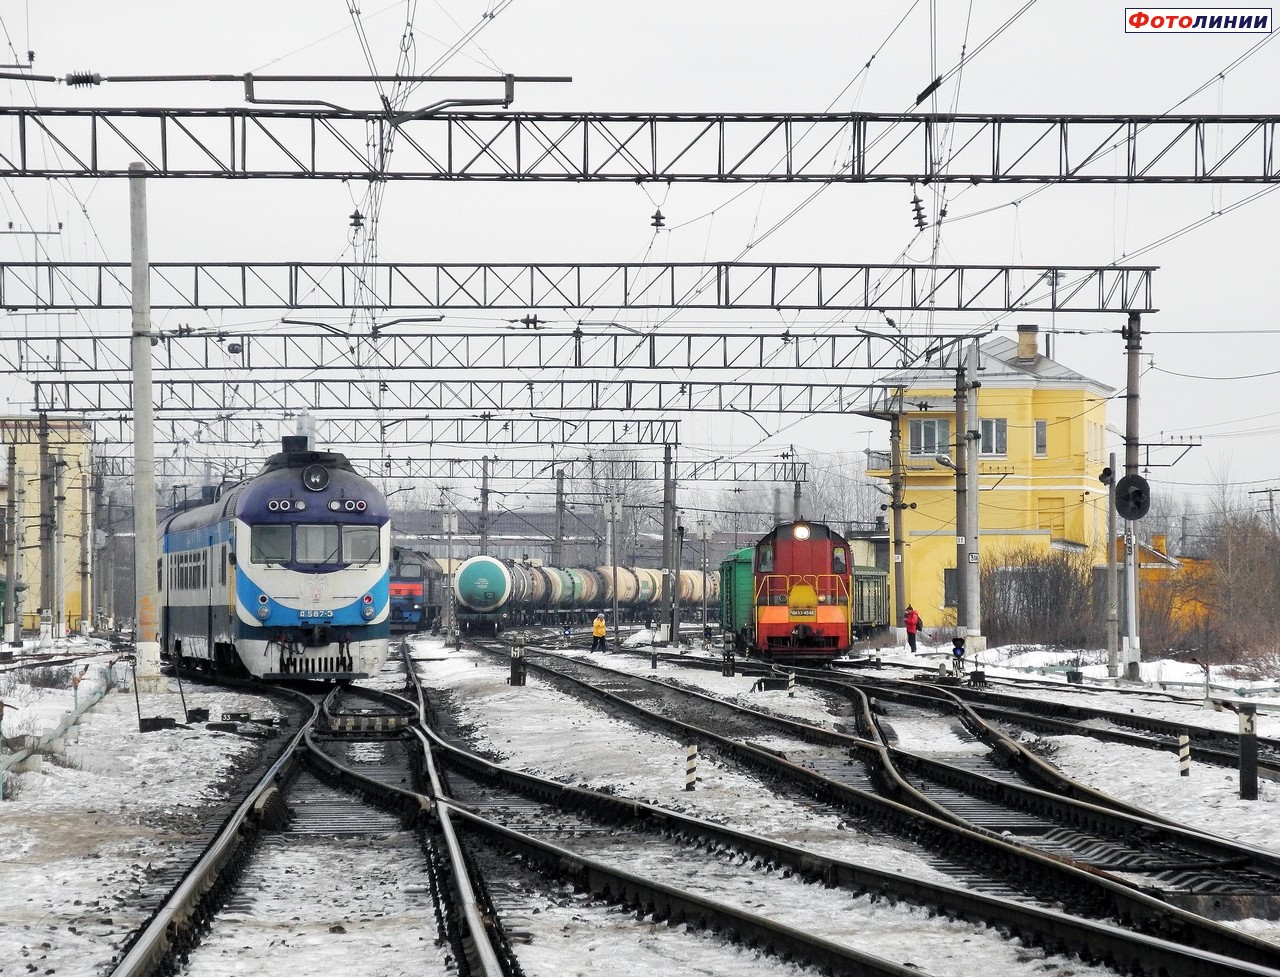 Вид станции со стороны ст. Бадаевская/Цветочная/Санкт-Петербург-Витебский Товарный